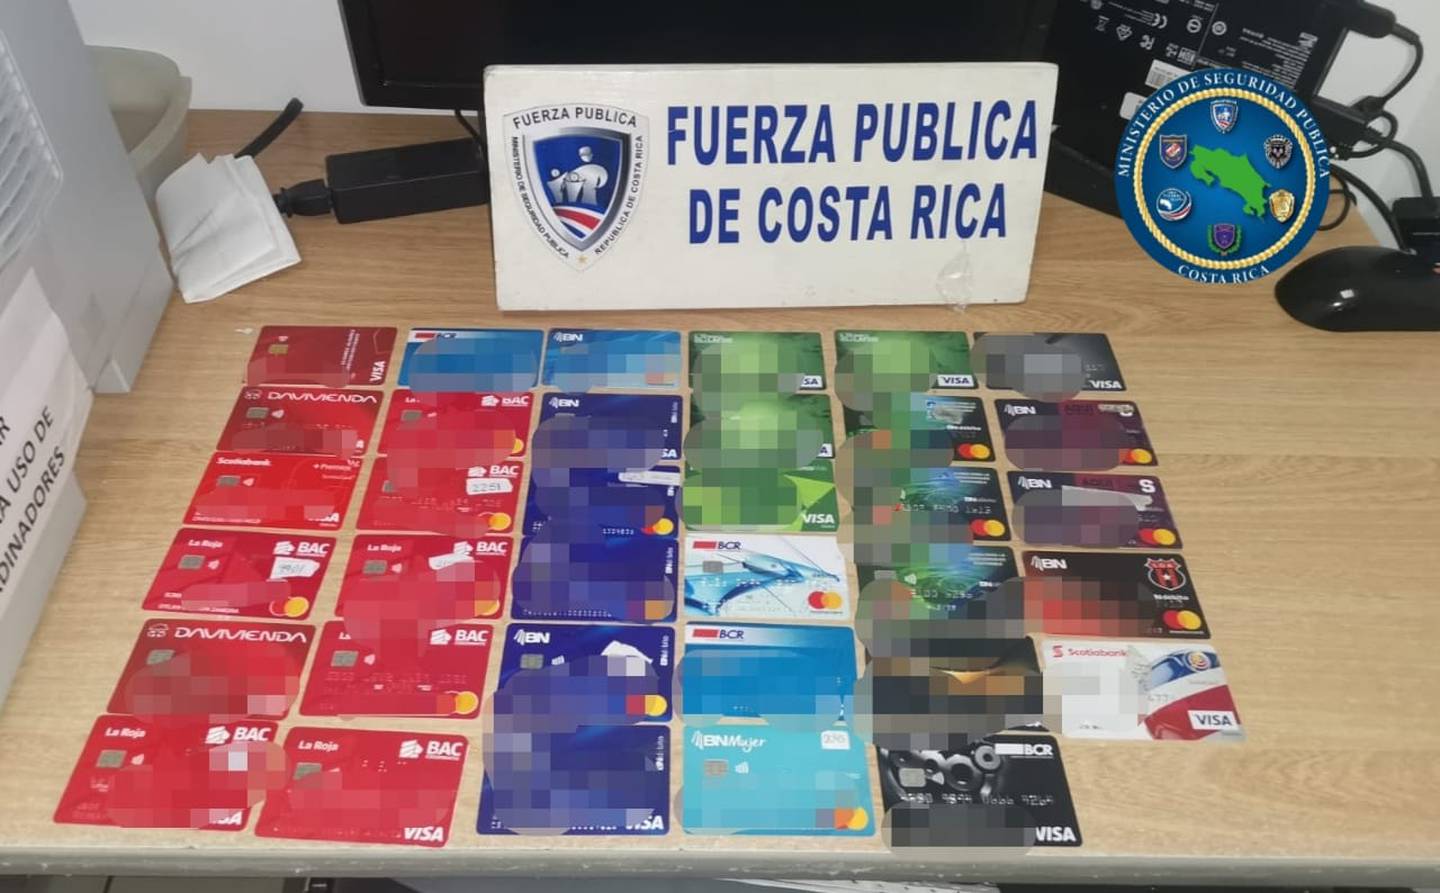 Una pareja fue detenida en un cajerto automático por la circunvalación de Hatillo con estas tarjetas de bancos públicos y privados, así como con dinero que era producto de una estafa. Foto: Cortesía MSP.